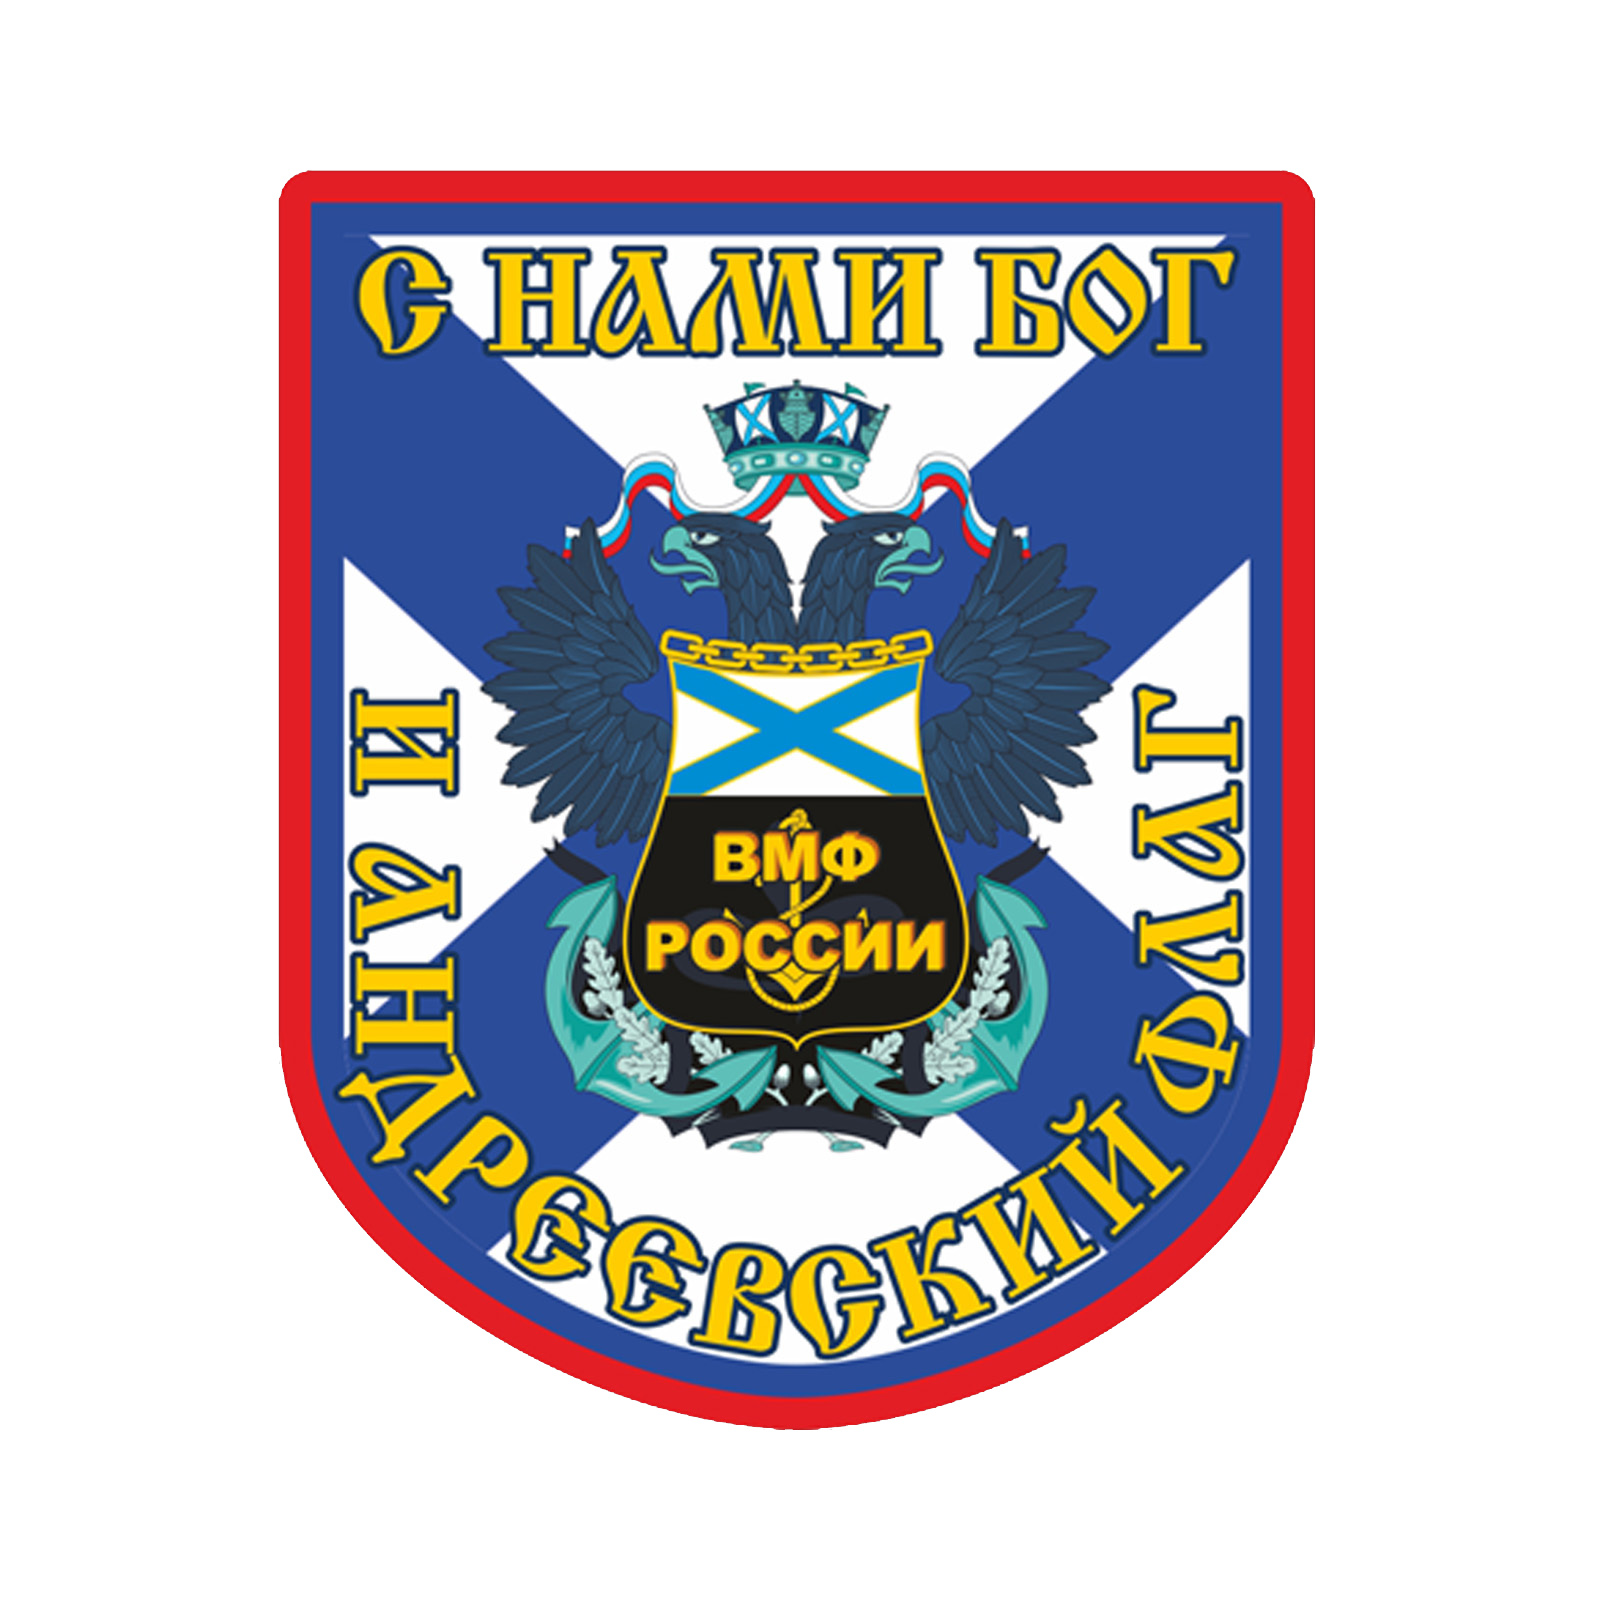 Чёрная футболка ВМФ России с девизом 